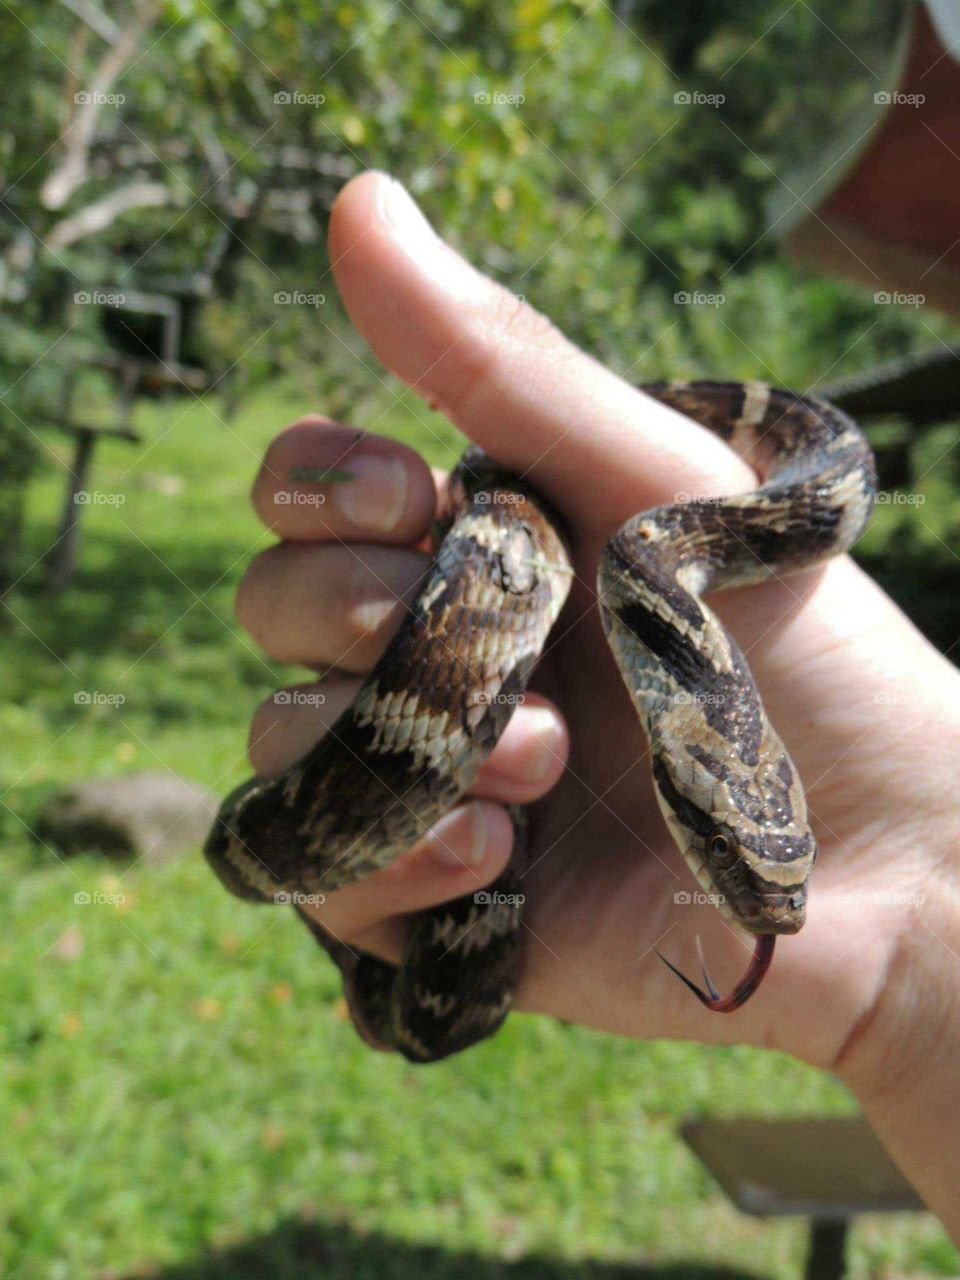 snake summer (sepente no verão)